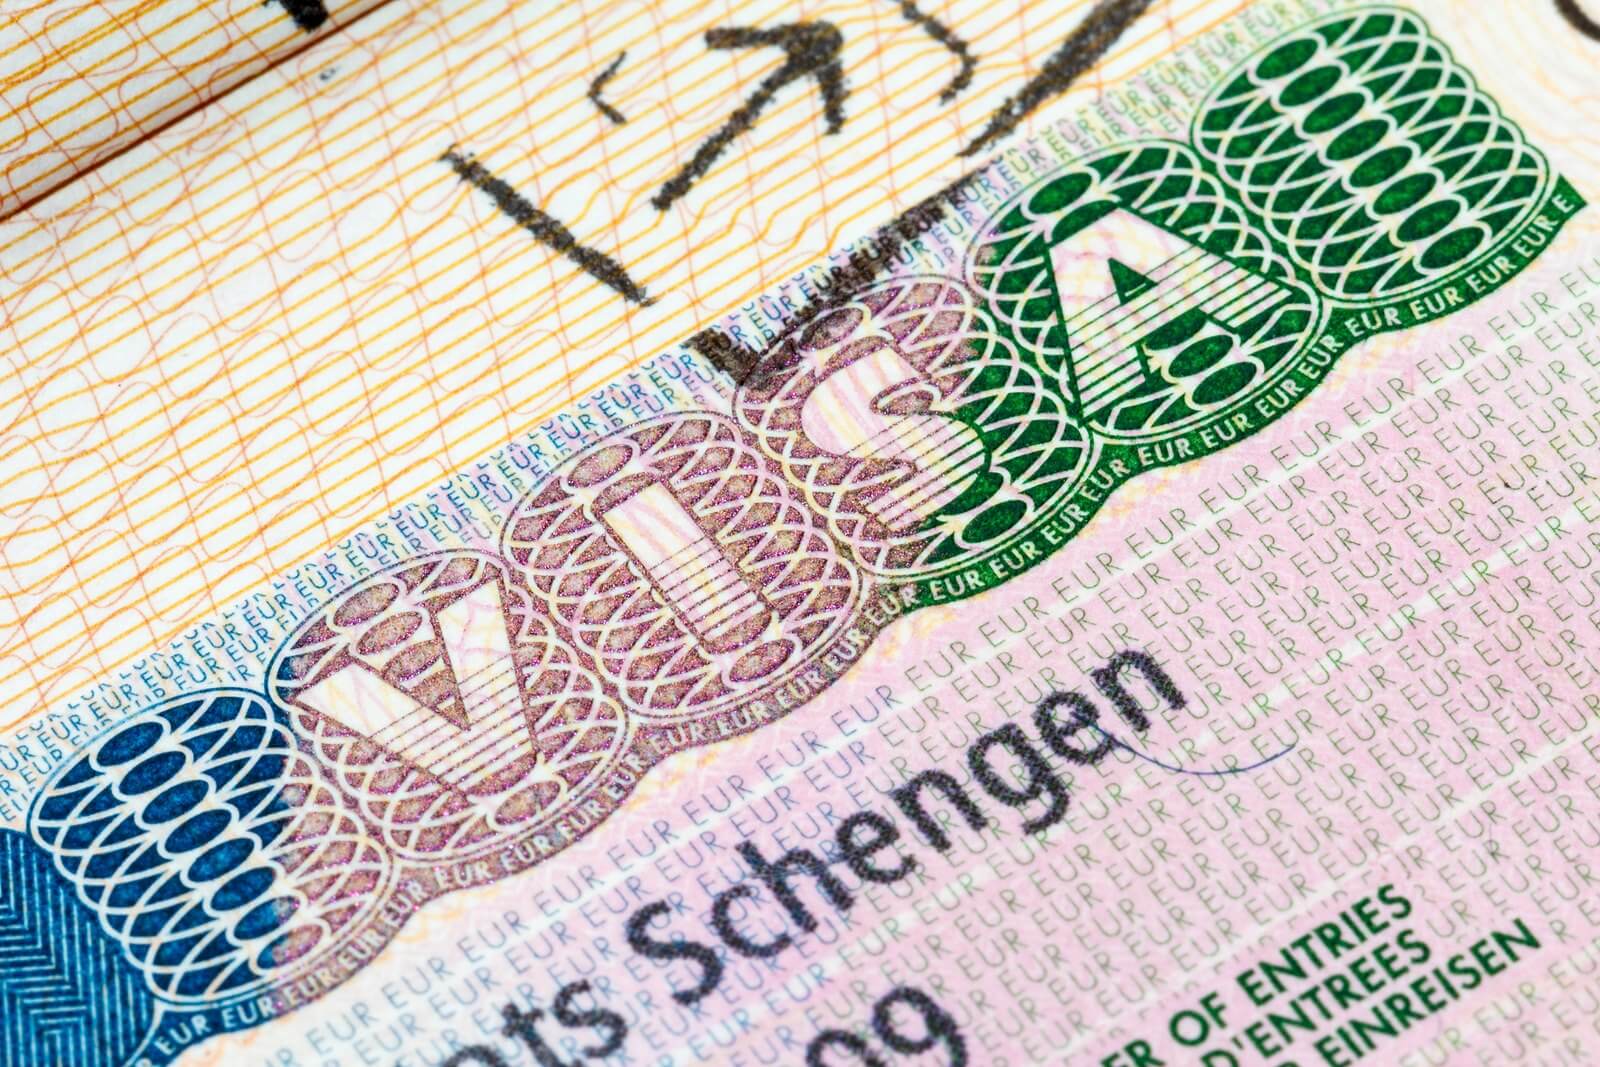 điền đơn xin visa Schengen